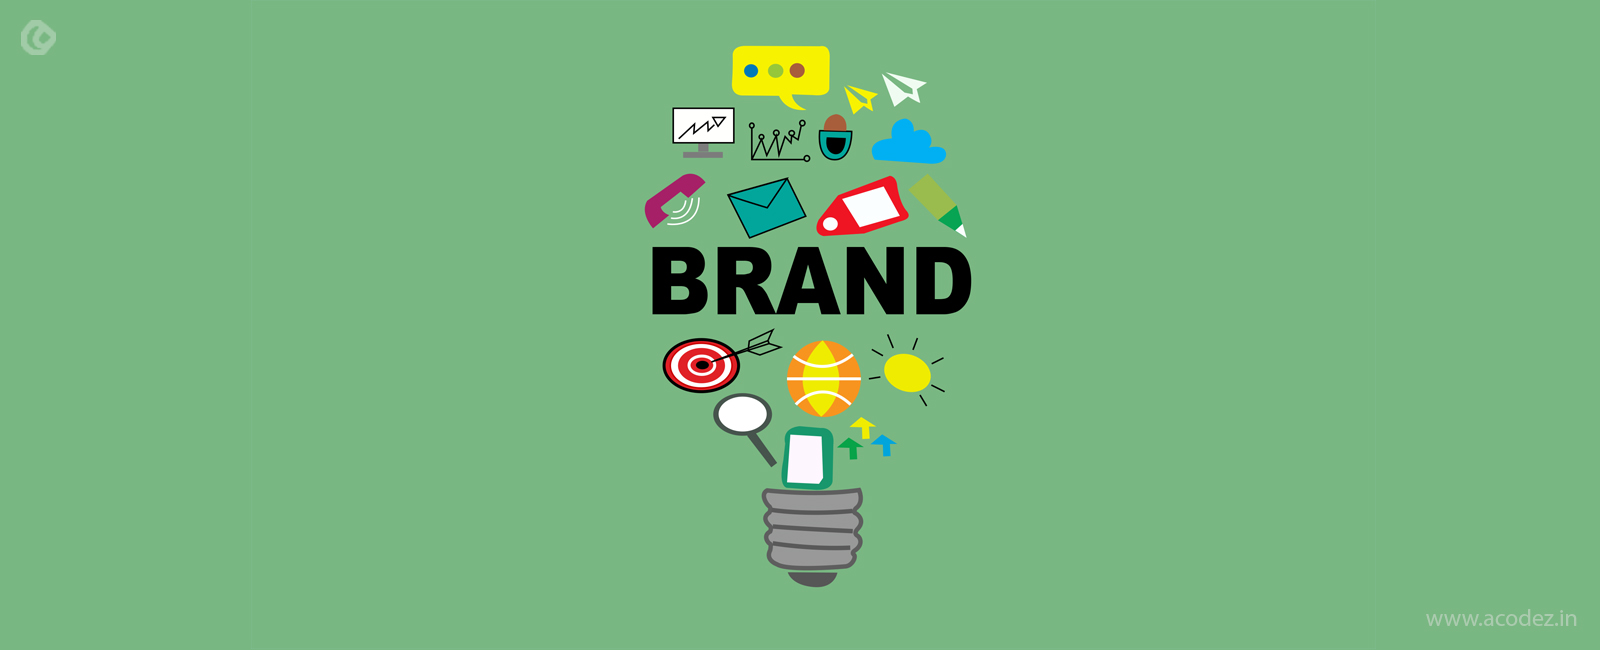 Thiết kế branding logo chuyên nghiệp và hiệu quả để nâng cao thương hiệu